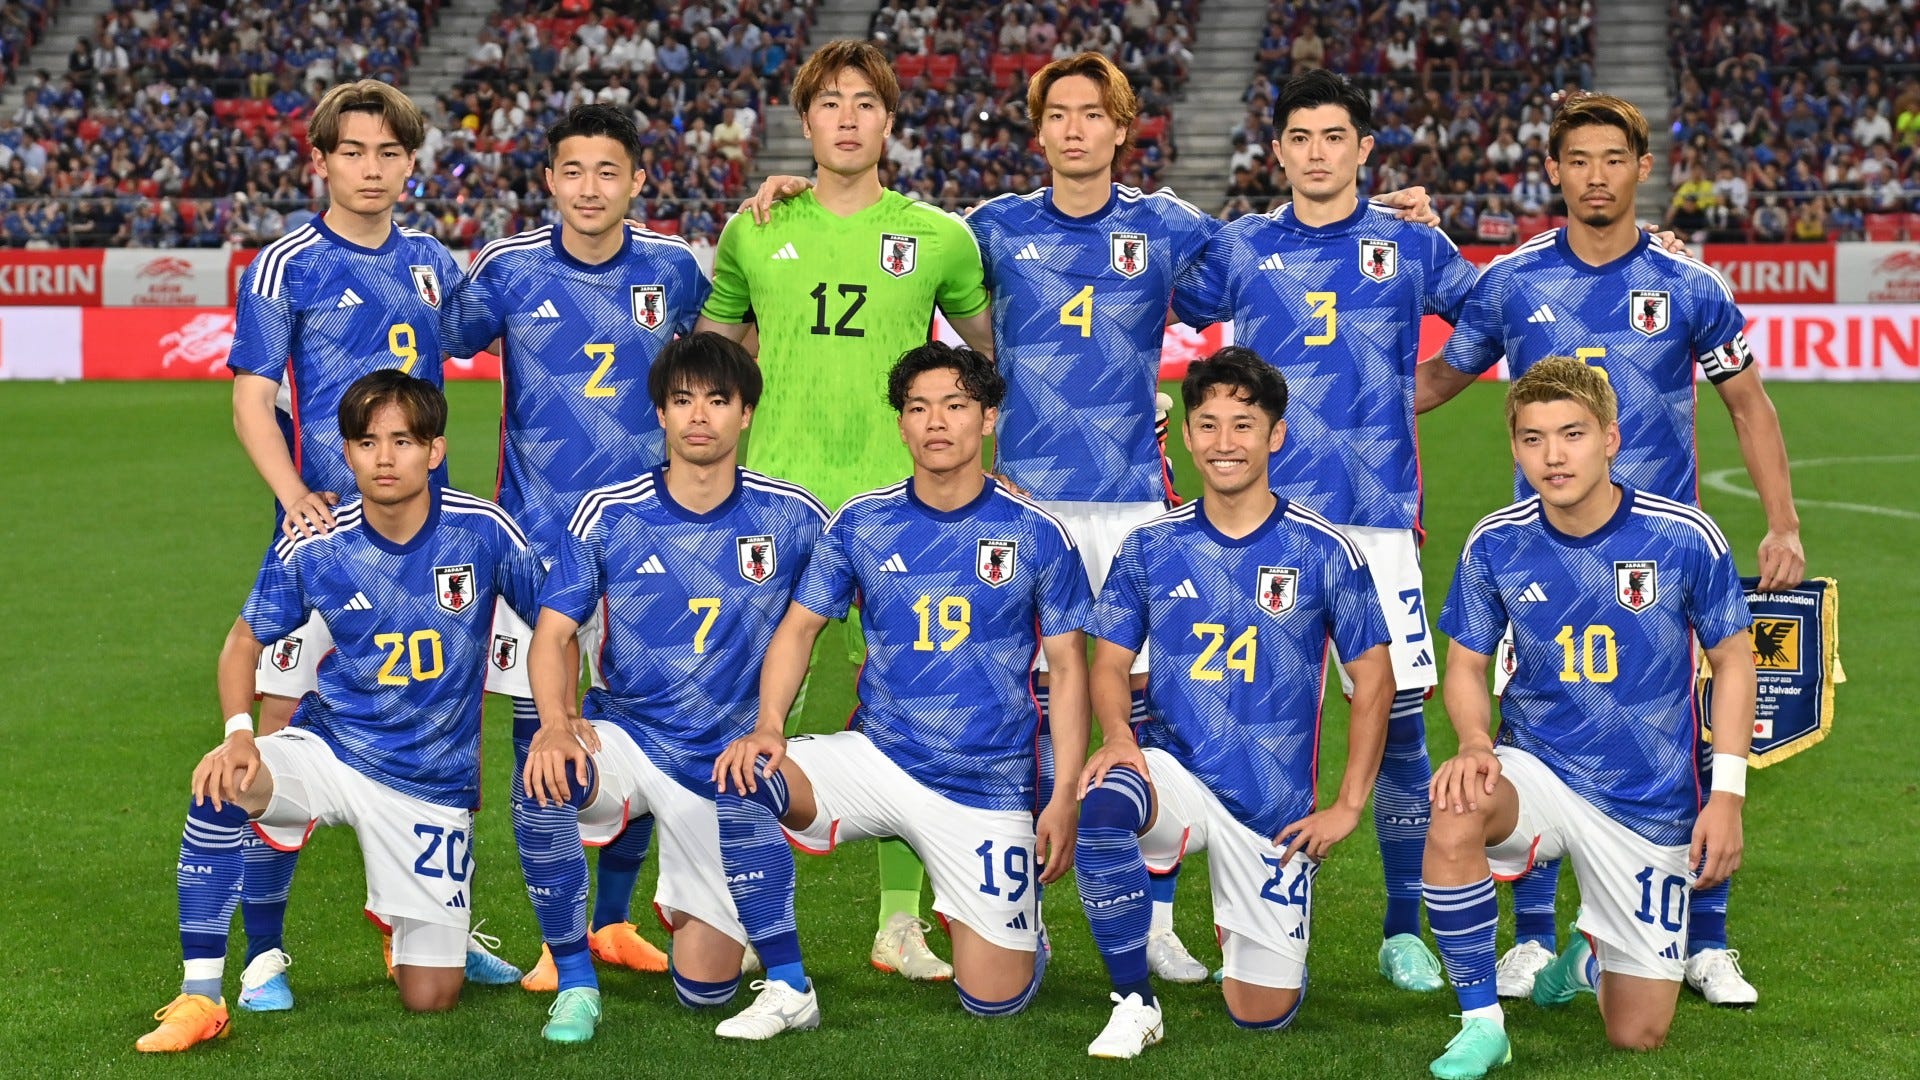 中田英寿 日本代表 ユニフォーム オーセンティック 日韓ワールドカップ 